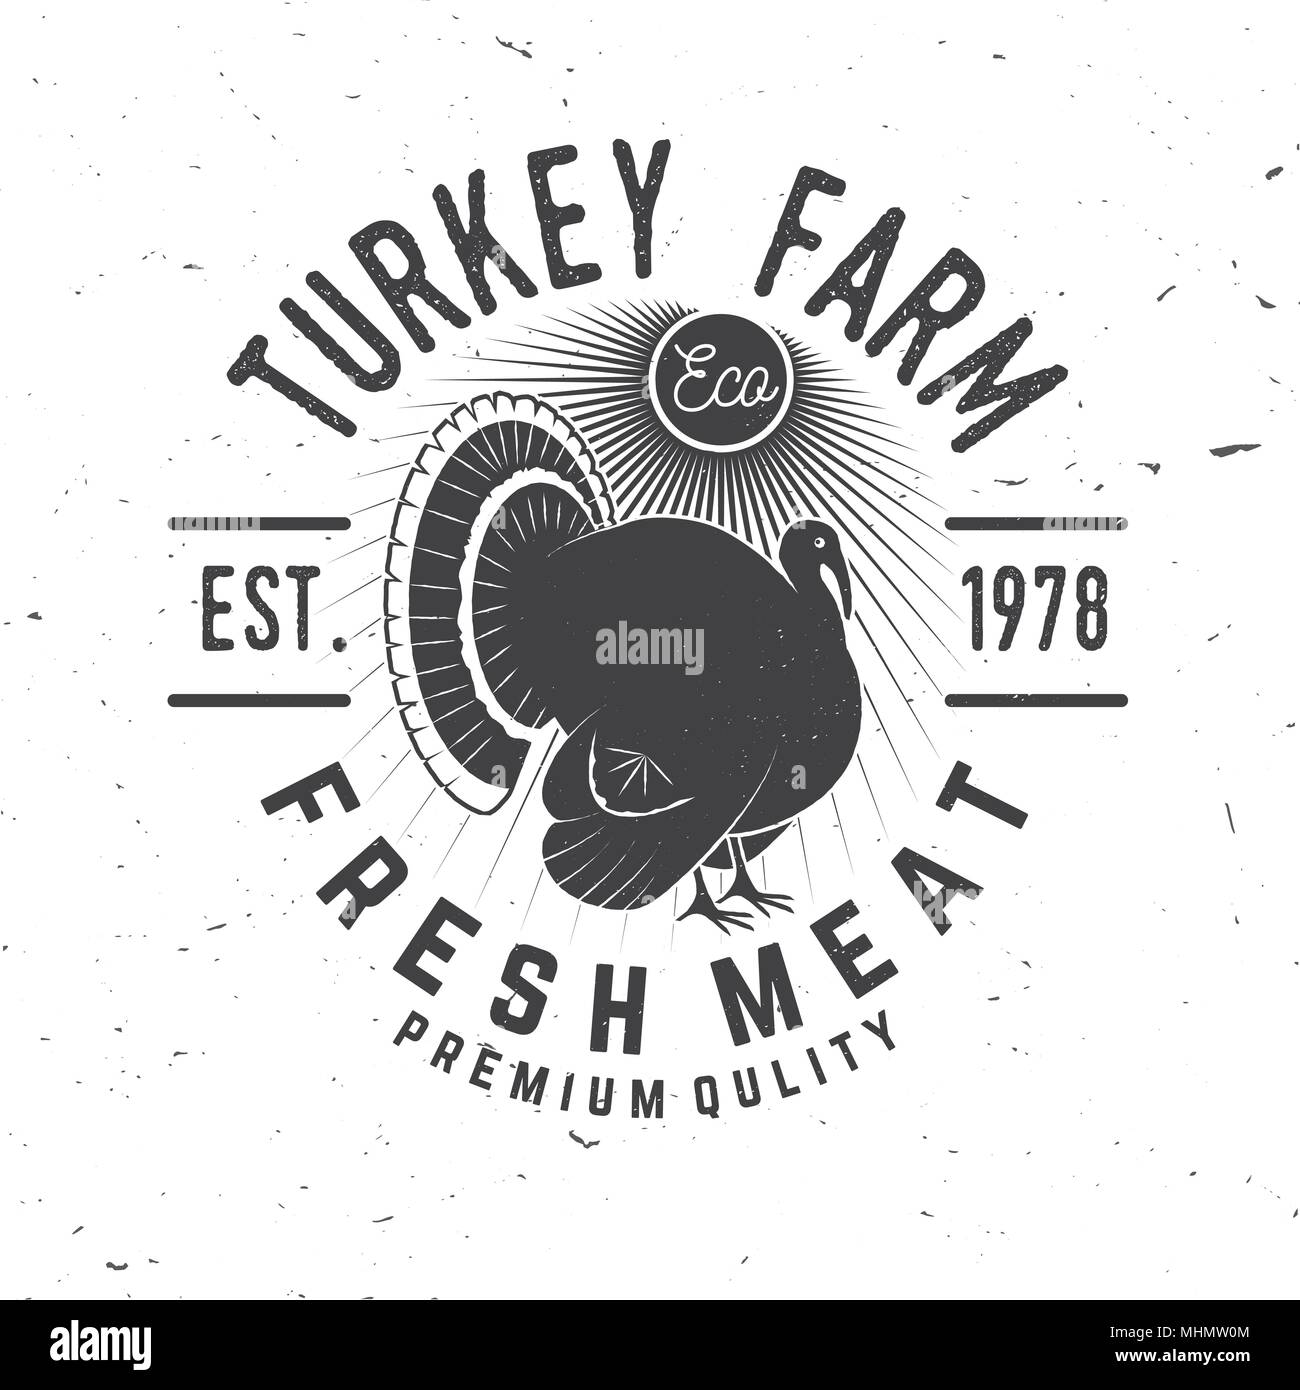 Die Türkei Bauernhof Abzeichen oder Label. Frisches Fleisch. Vector Illustration. Vintage Typografie Design mit der Türkei Silhouette. Elemente auf das Thema der Türkei Landwirtschaftsbetriebe. Stock Vektor